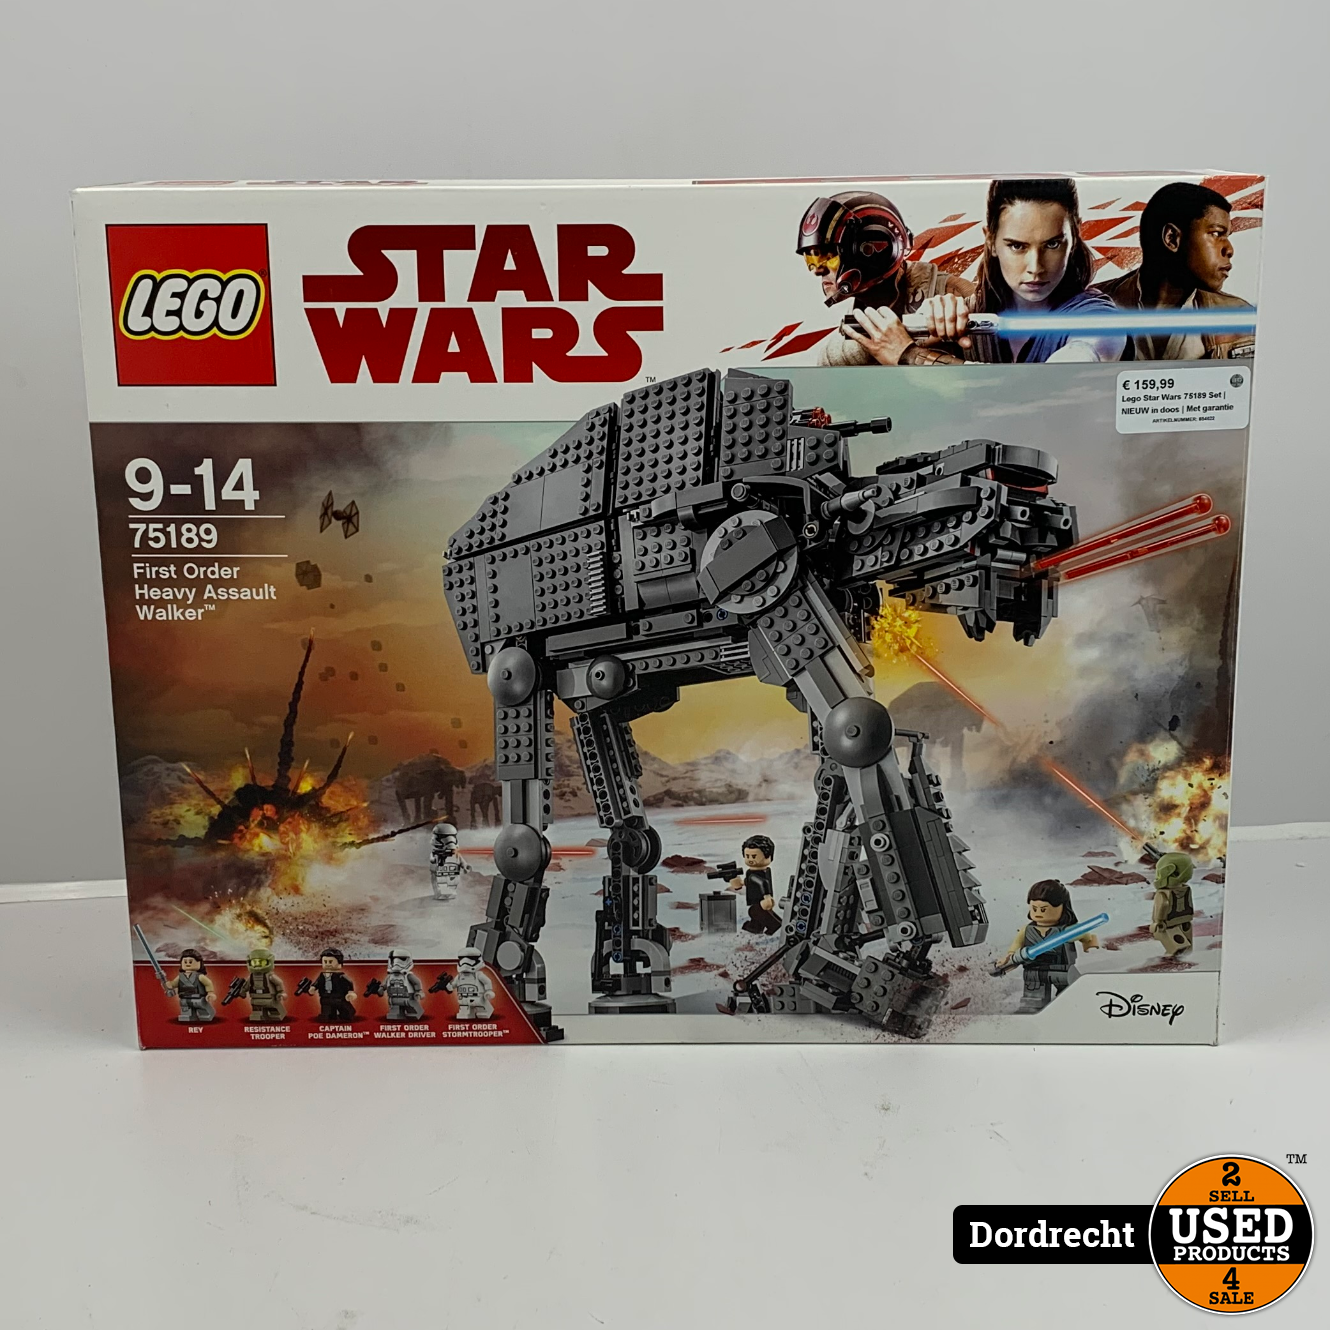 Lego Wars Set | NIEUW in doos Met garantie - Used Products Dordrecht